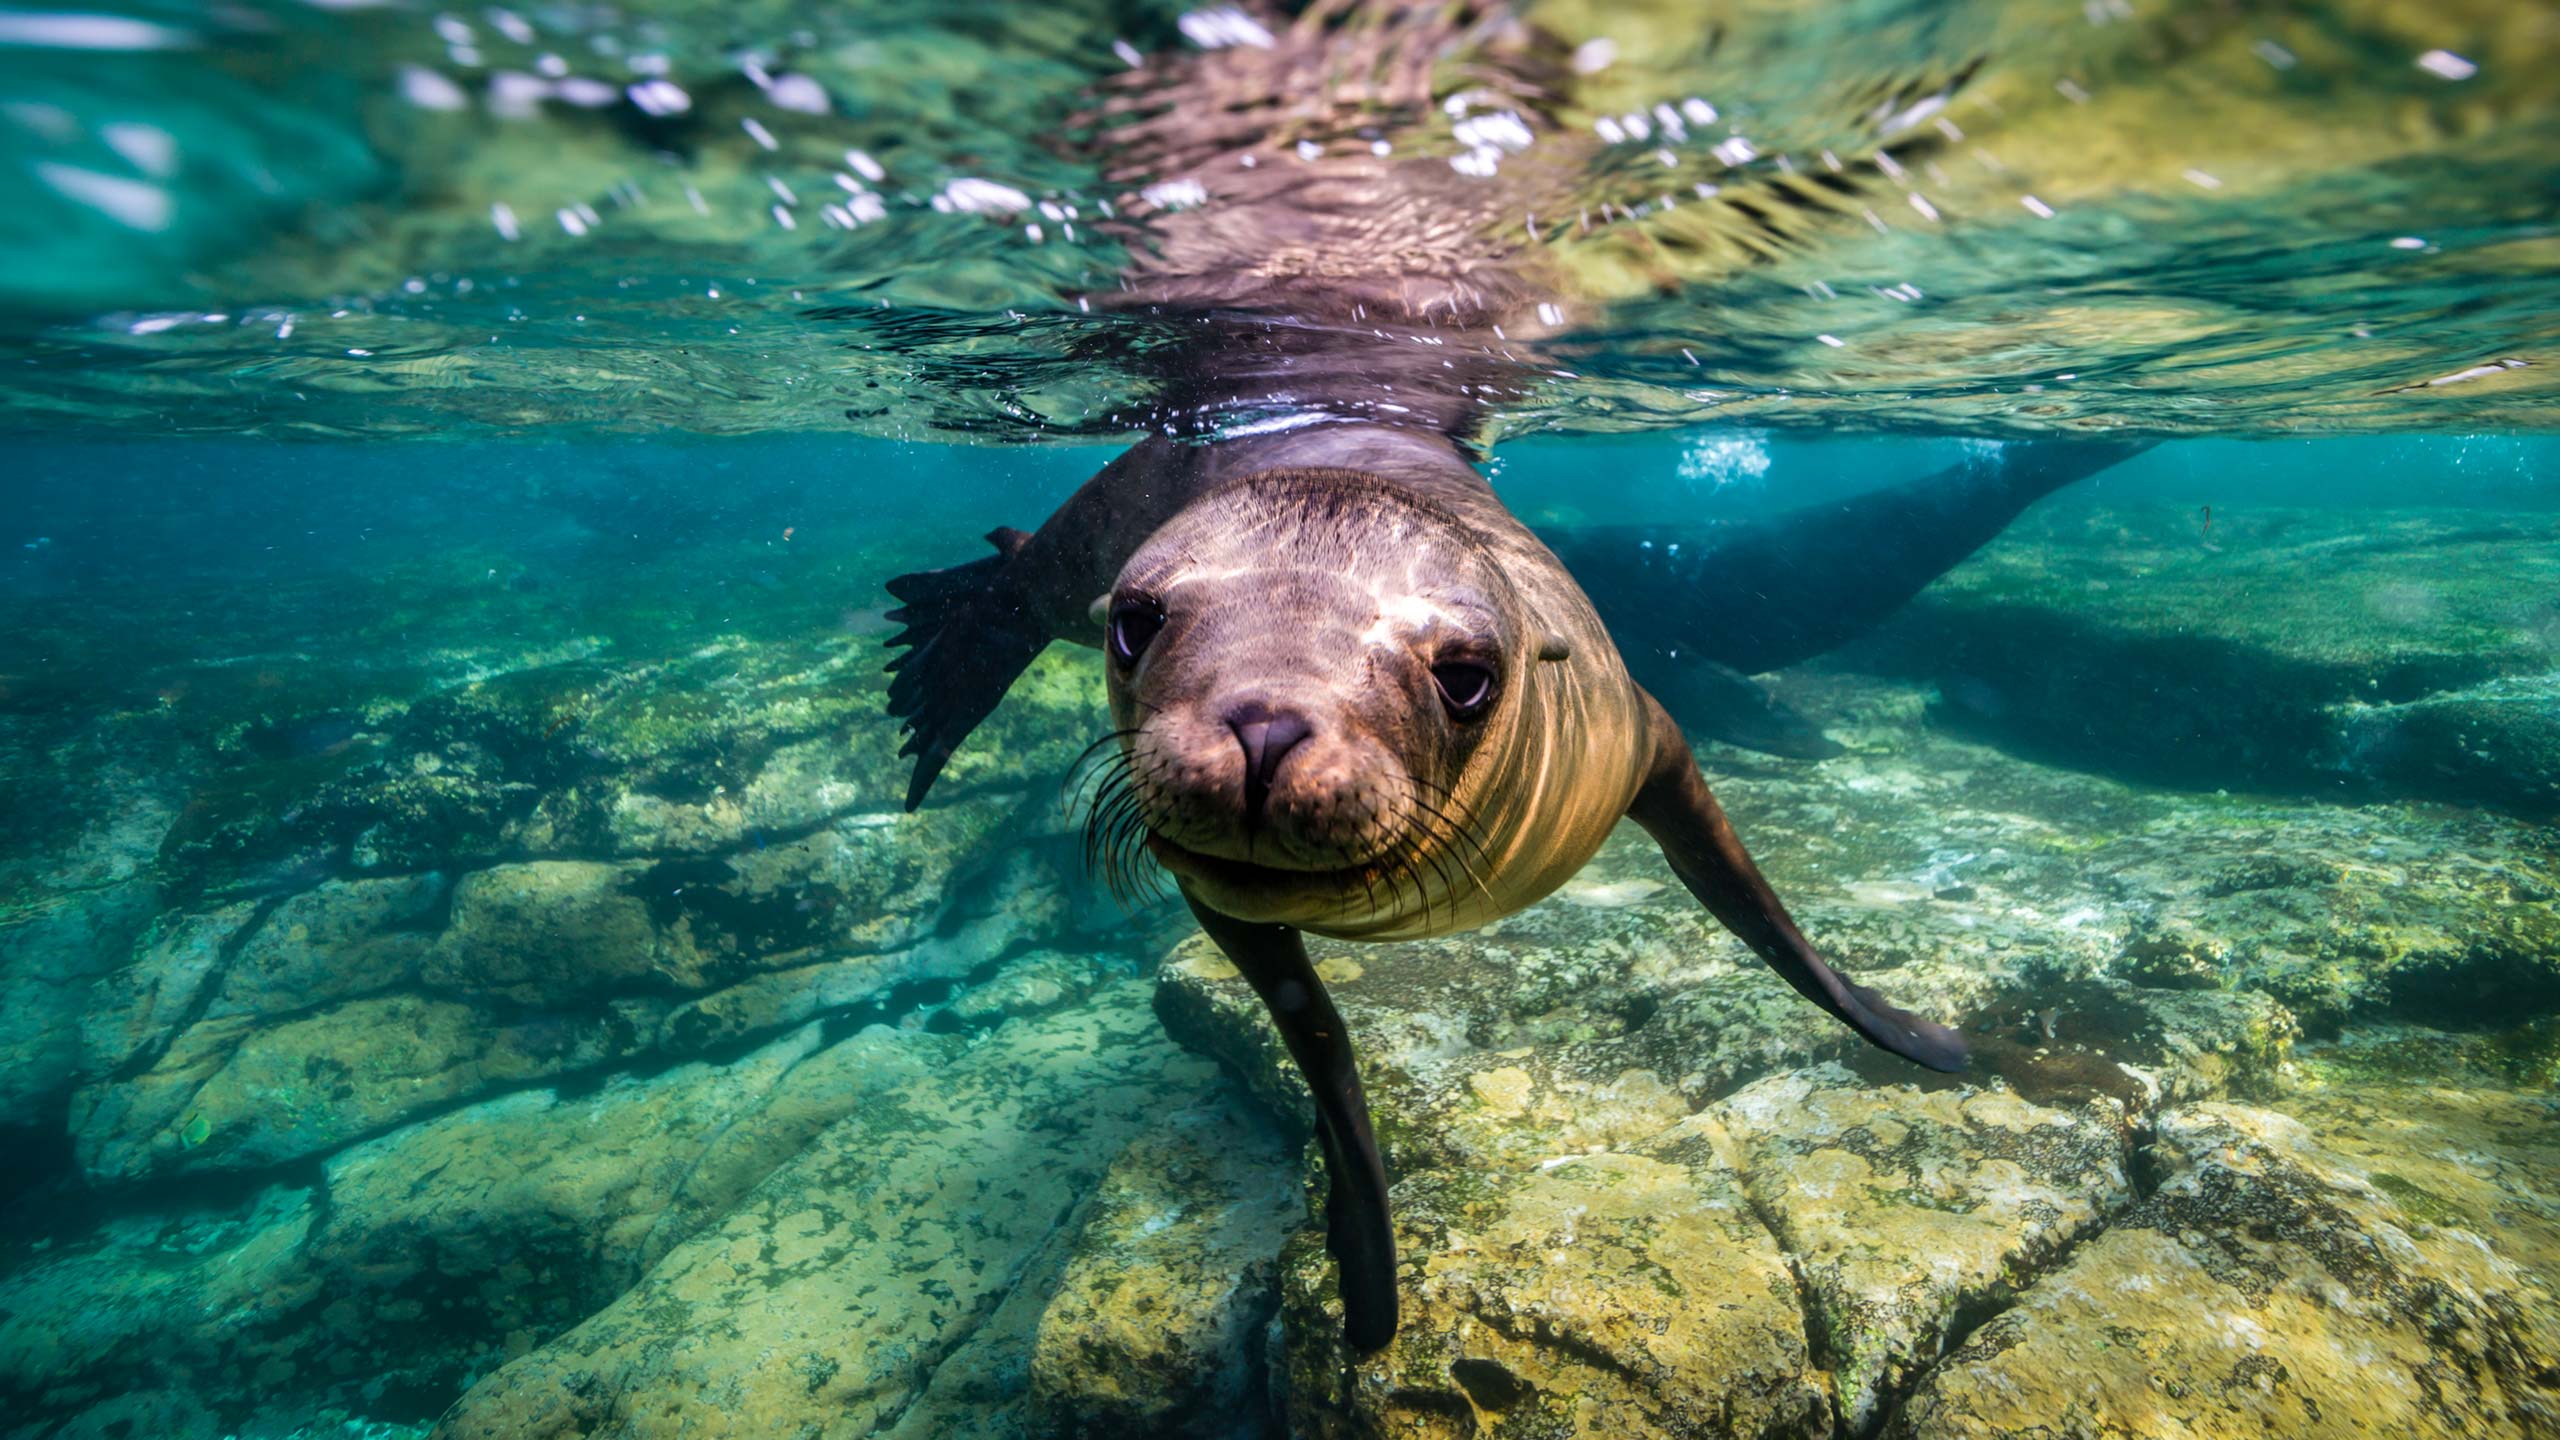 Juvenile California sea lion swimming underwater in blue ocean